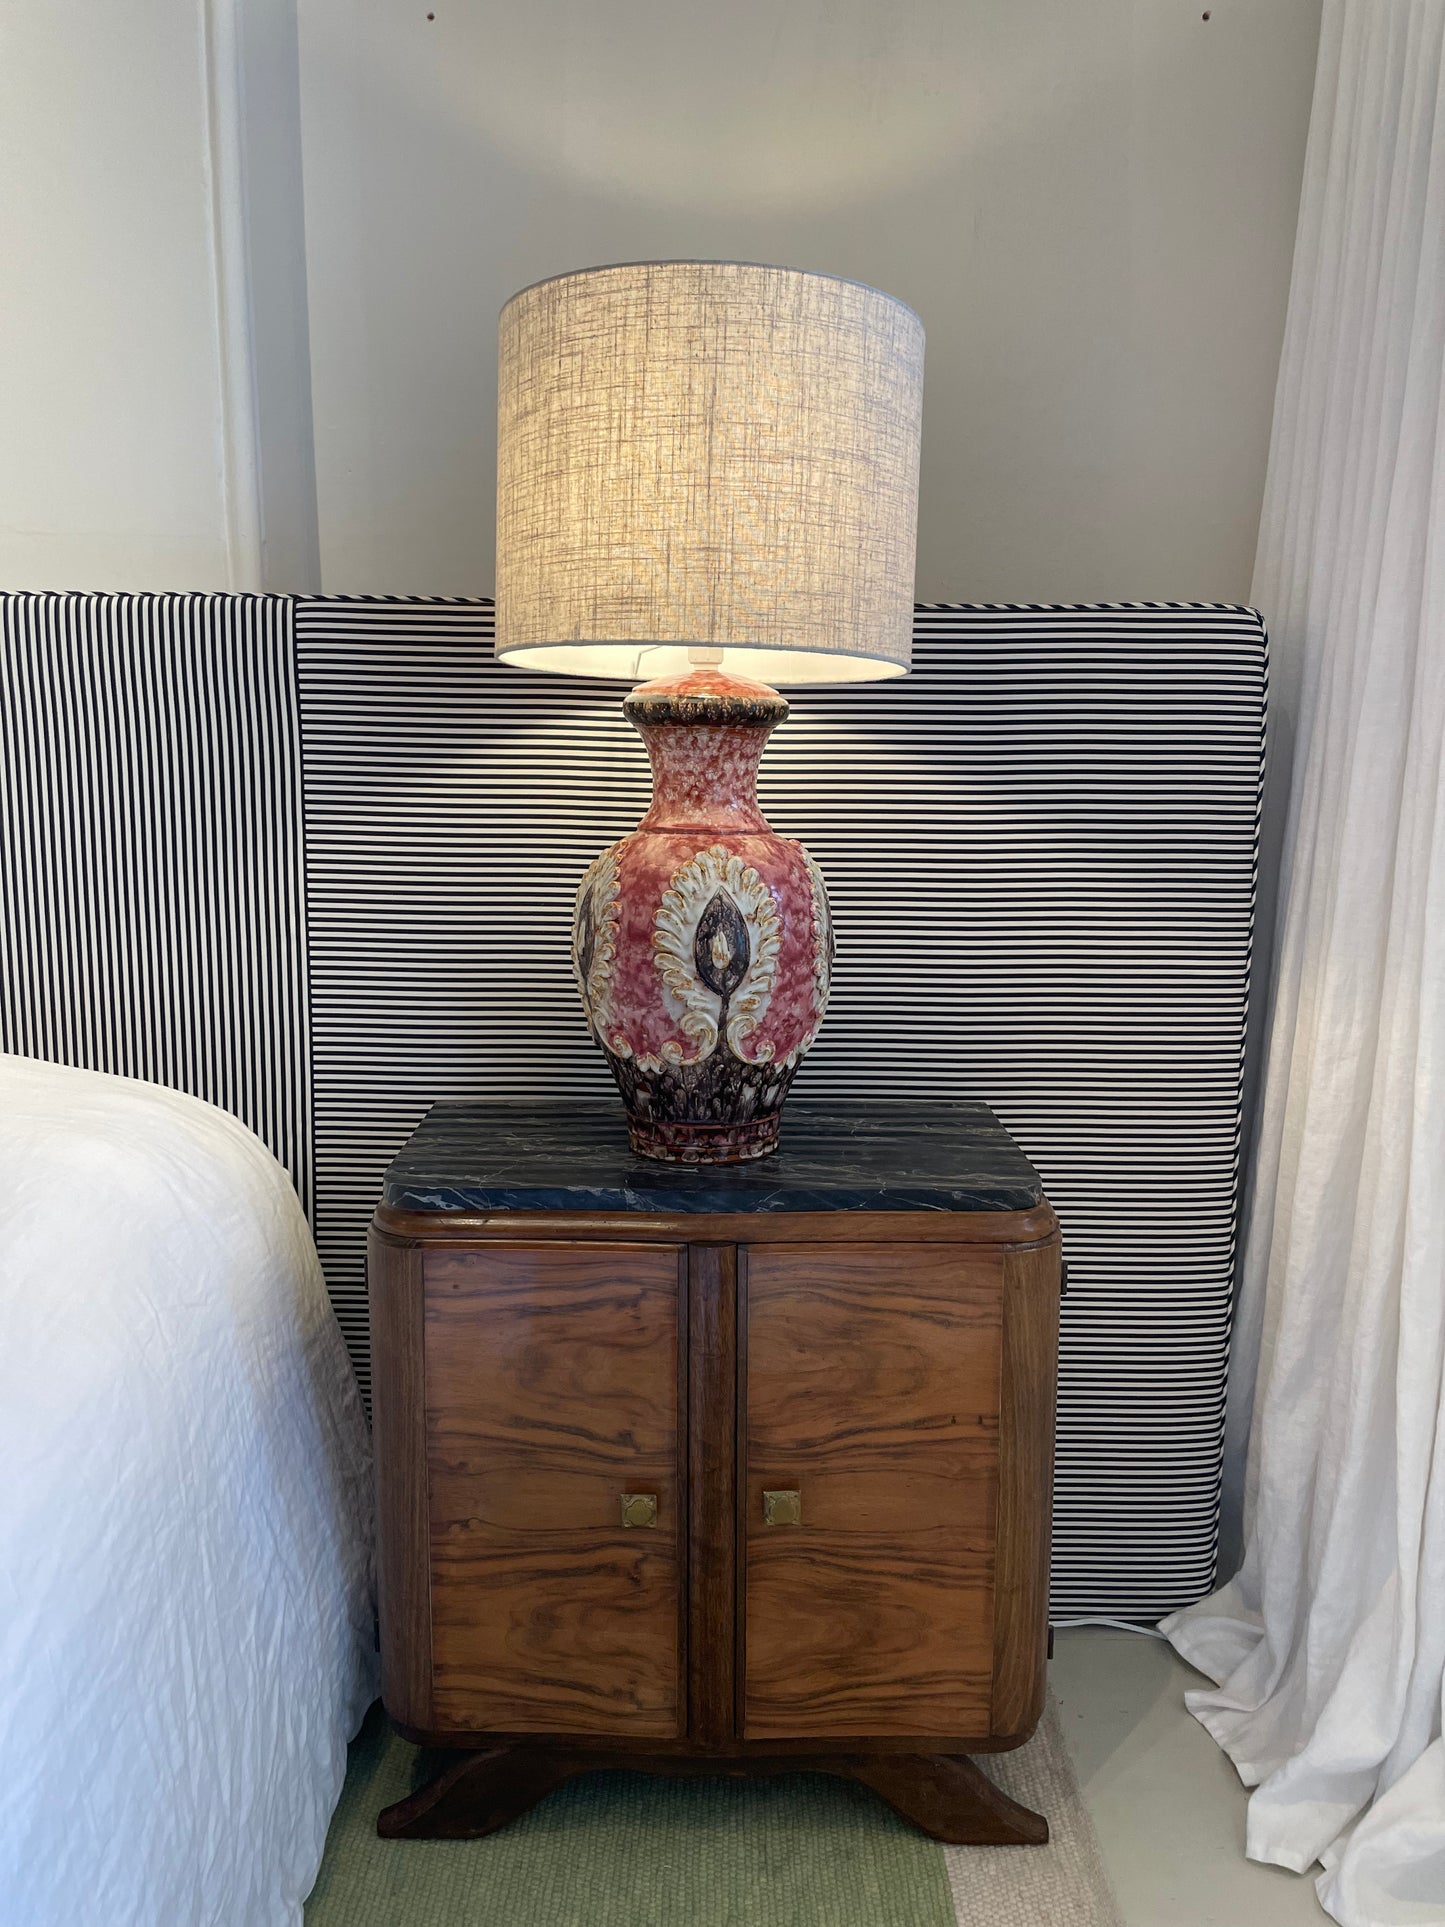 - Vintage Italian Handmade Statement Lamp - Three Available